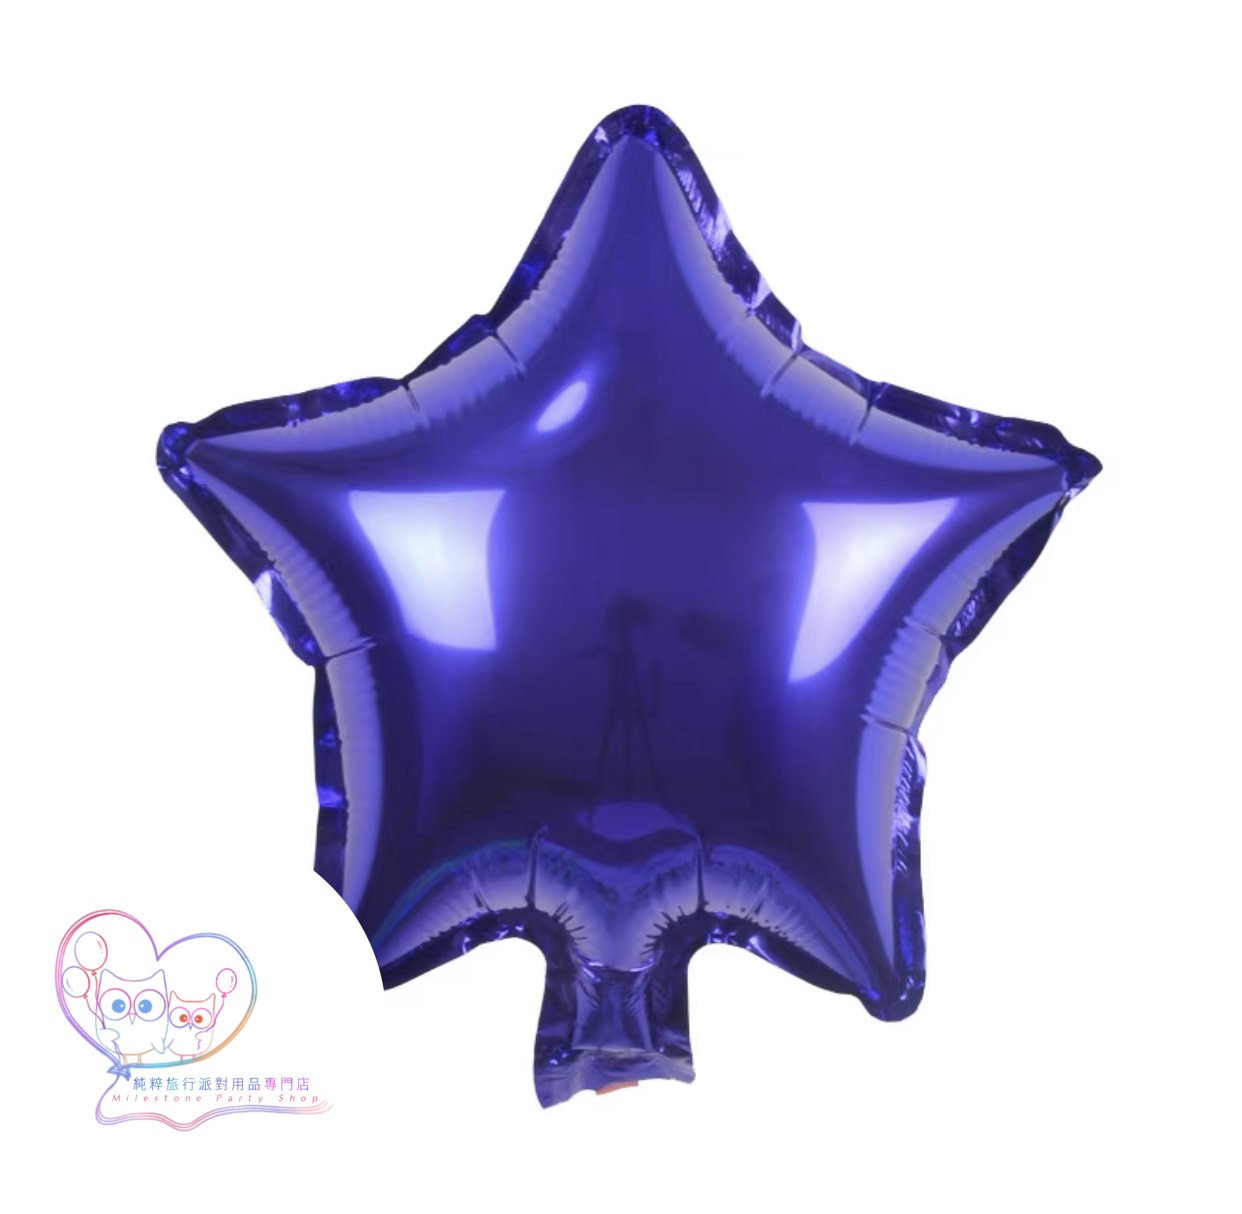 10吋星星鋁膜氣球 (紫色) 10S9